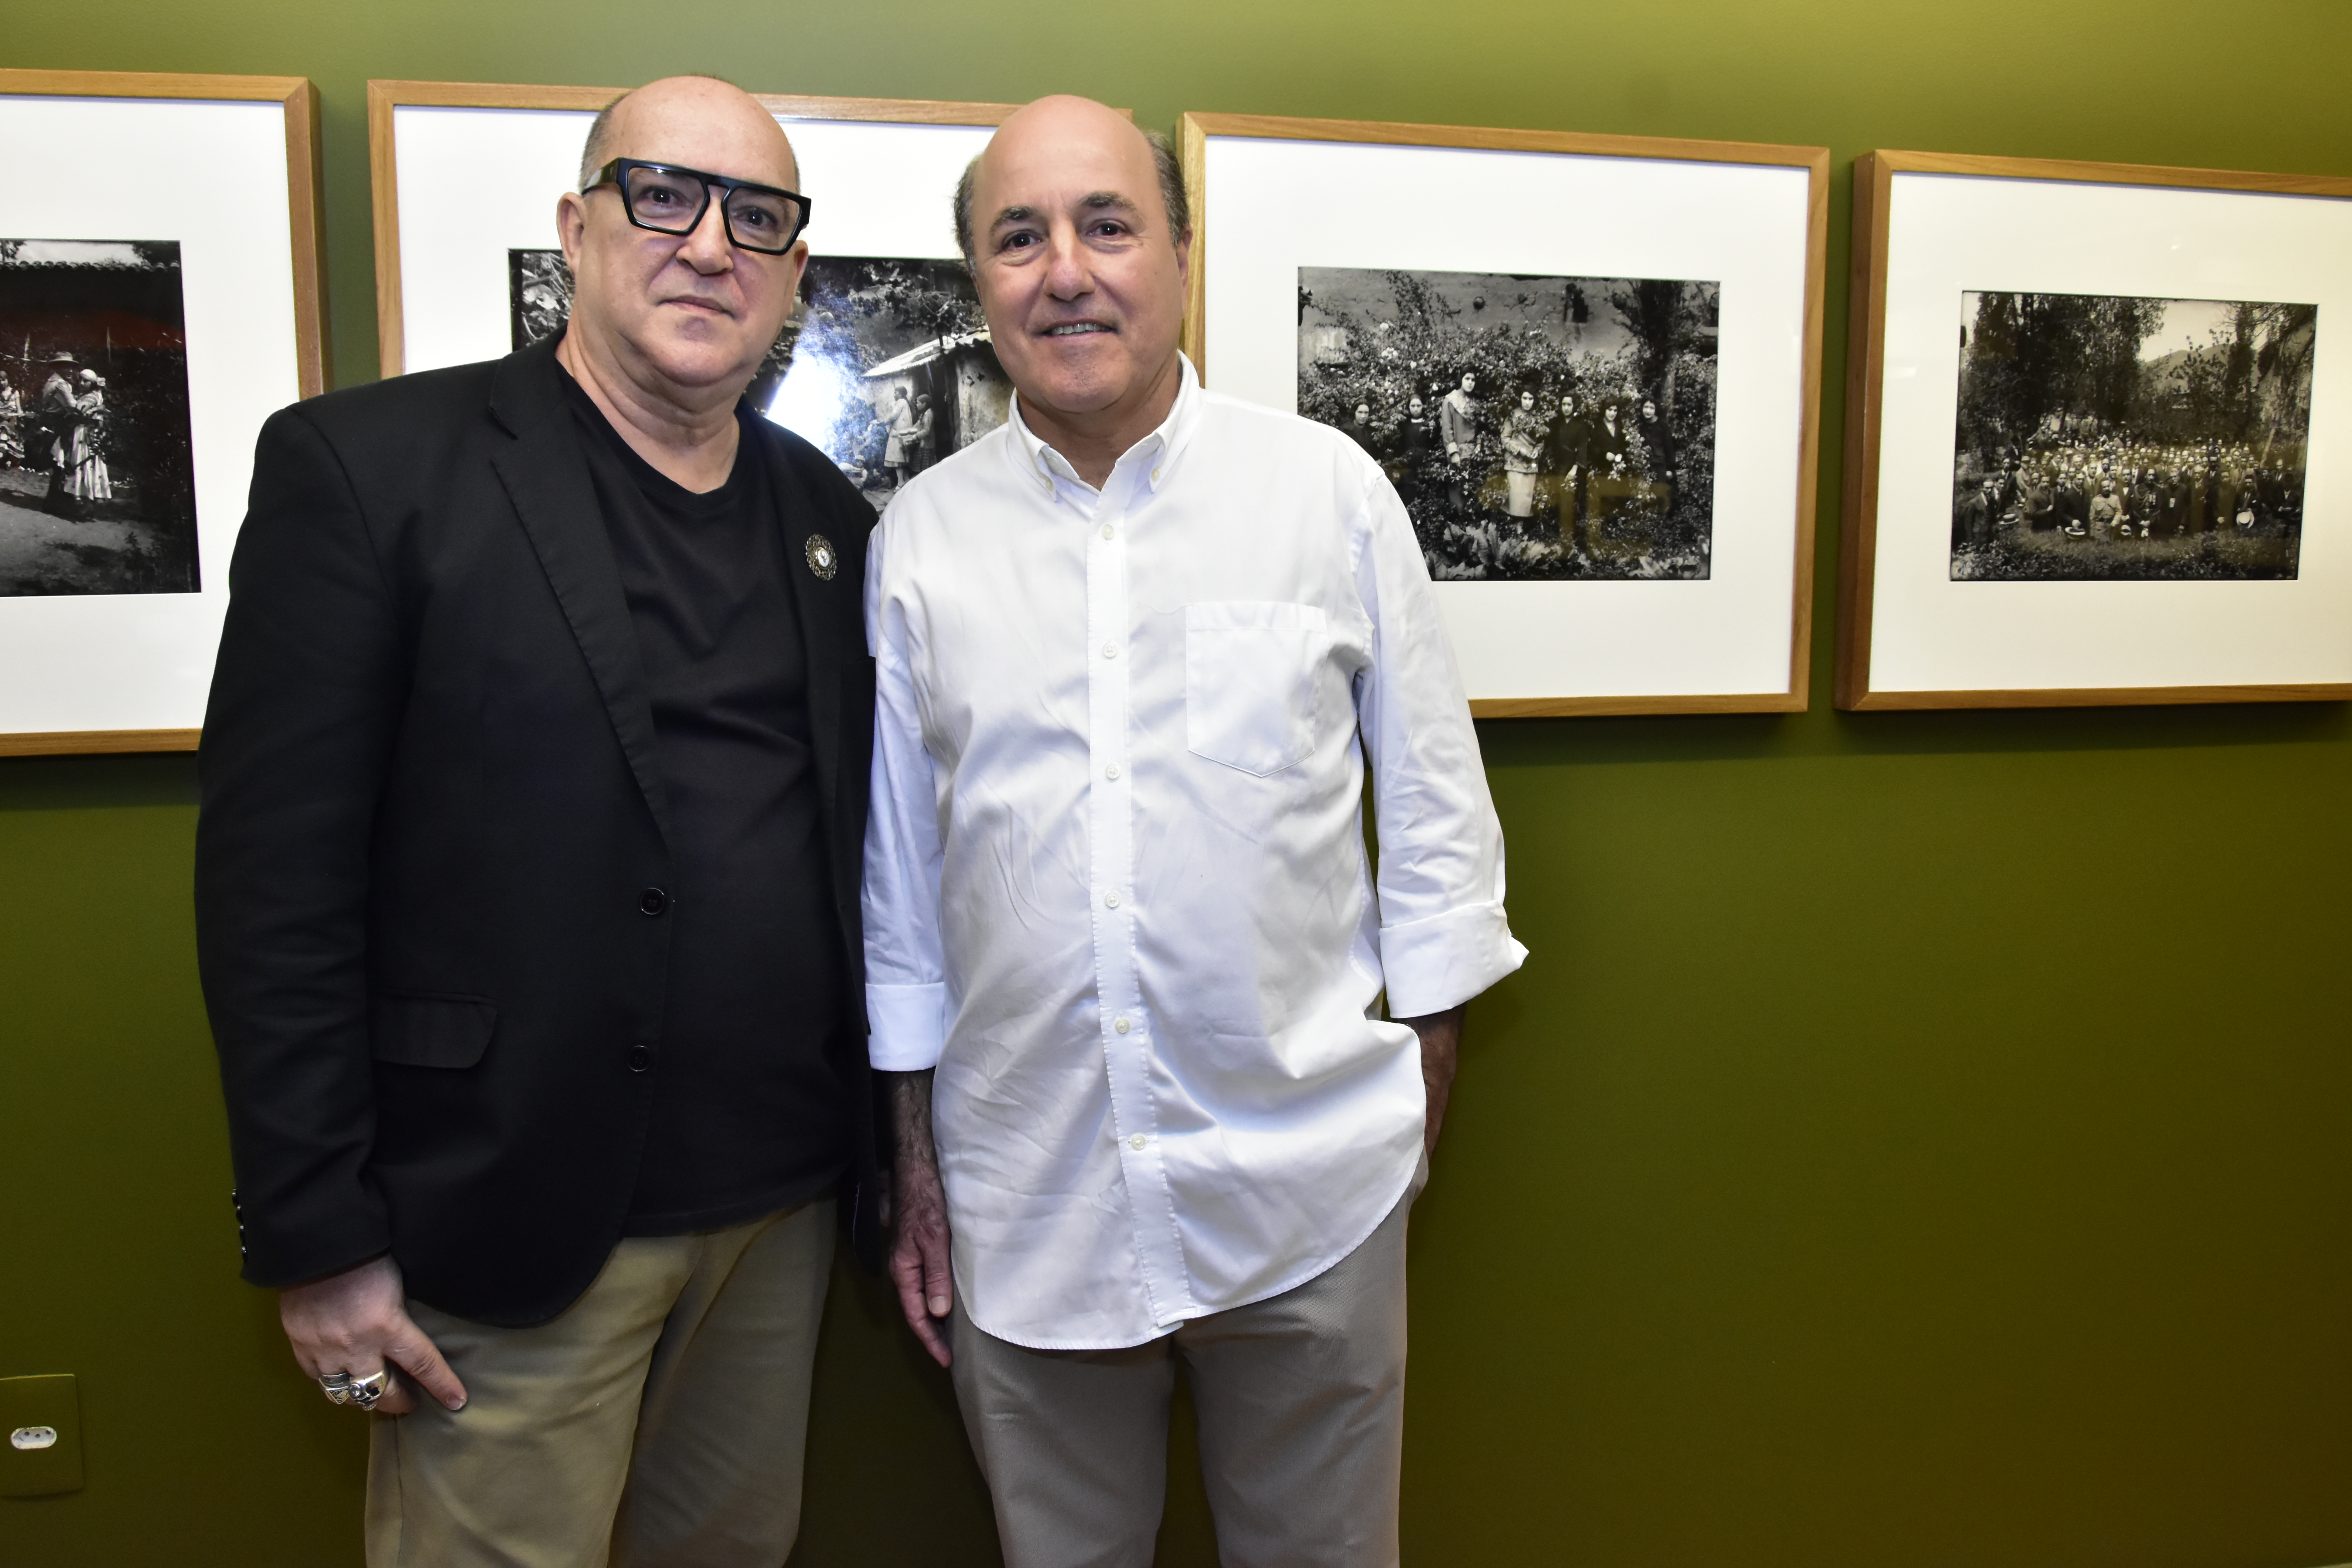 Museu da Fotografia de Fortaleza traz Irmãos Vargas e Martín Chambi em exposição inédita; conferimos a vernissage